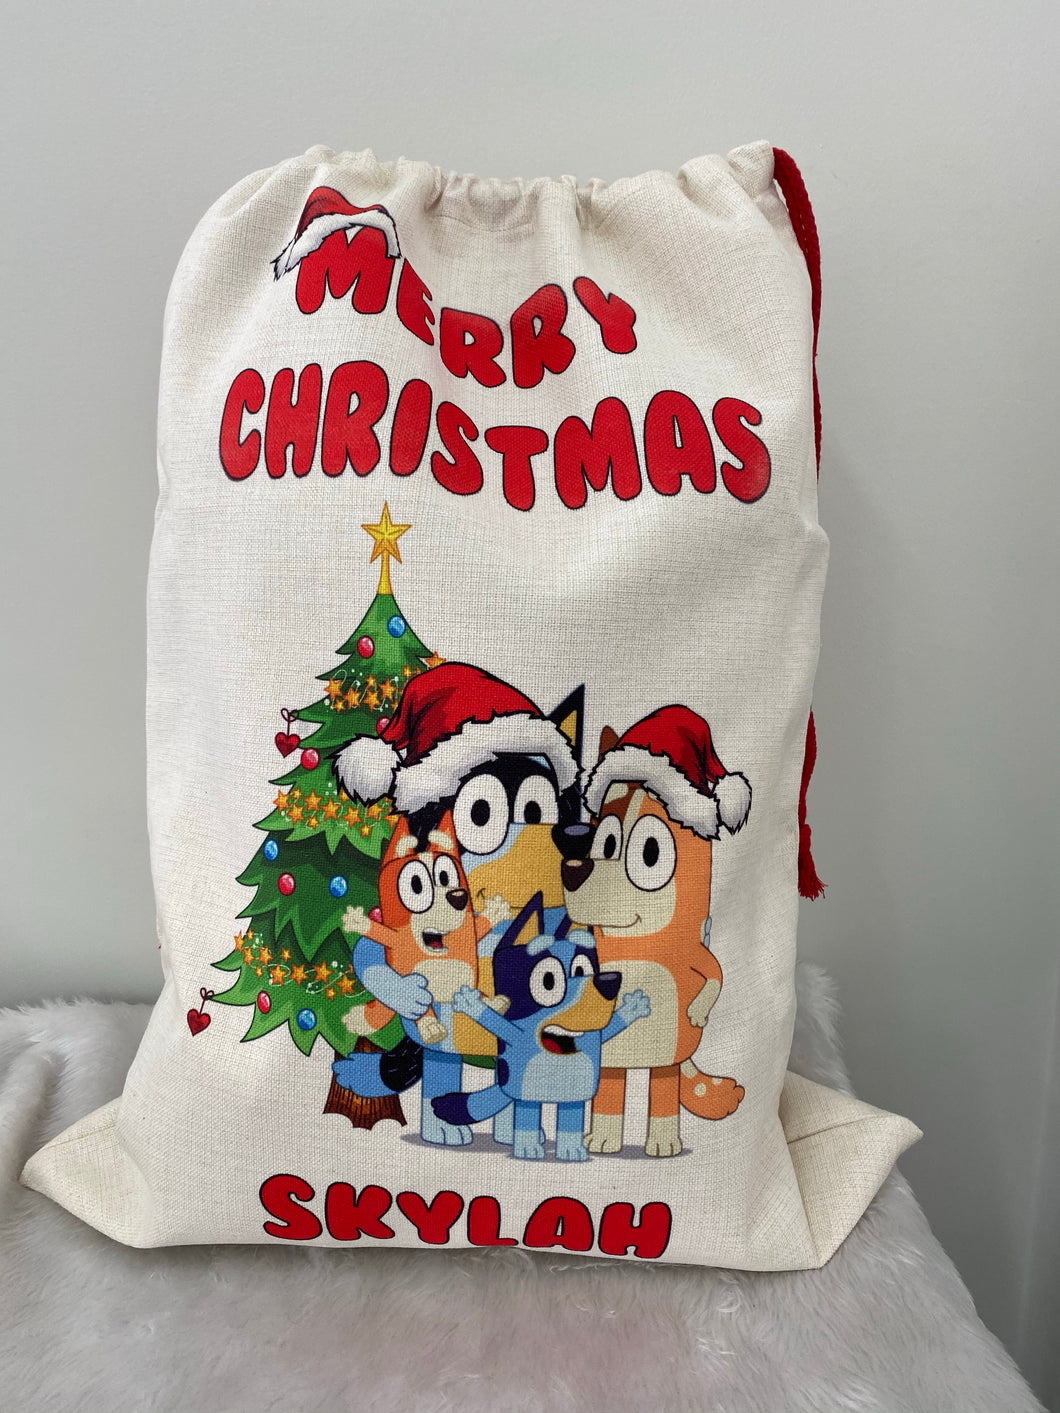 Bluey Santa sack